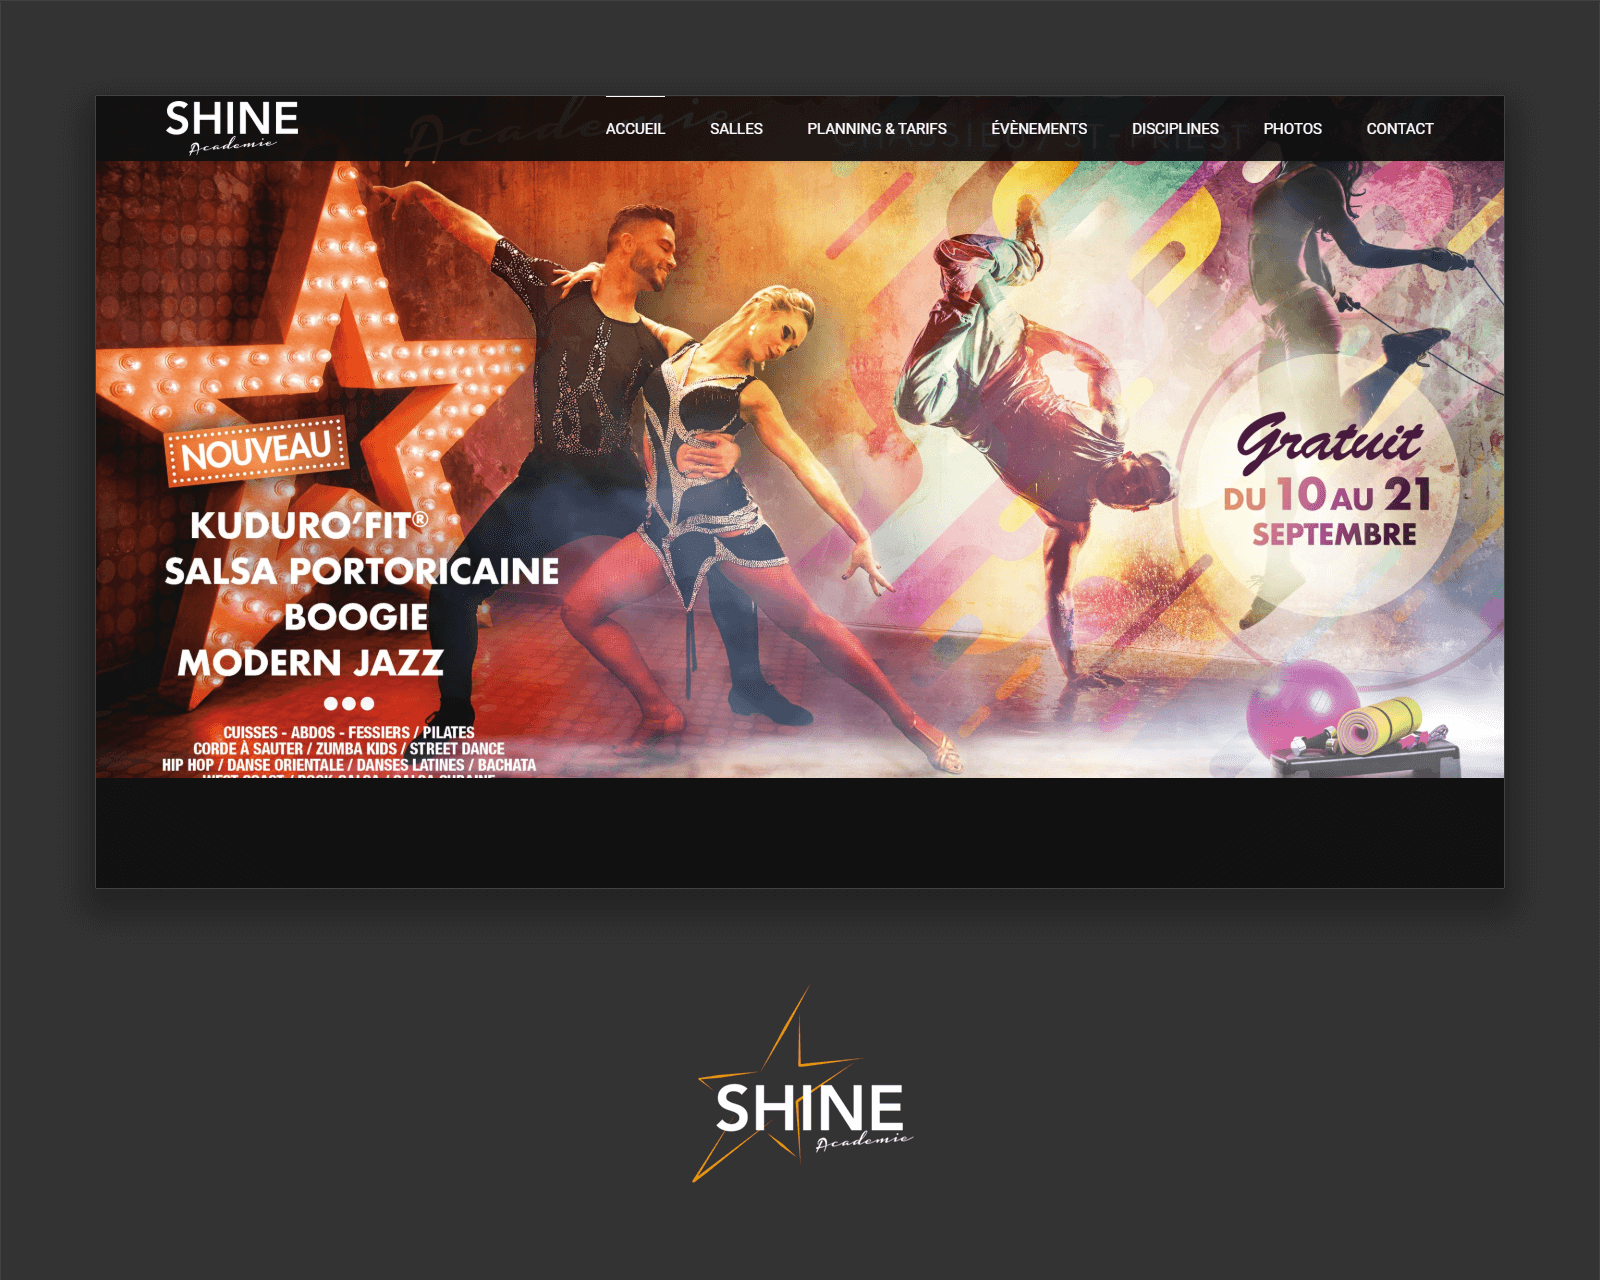 Shine Academie